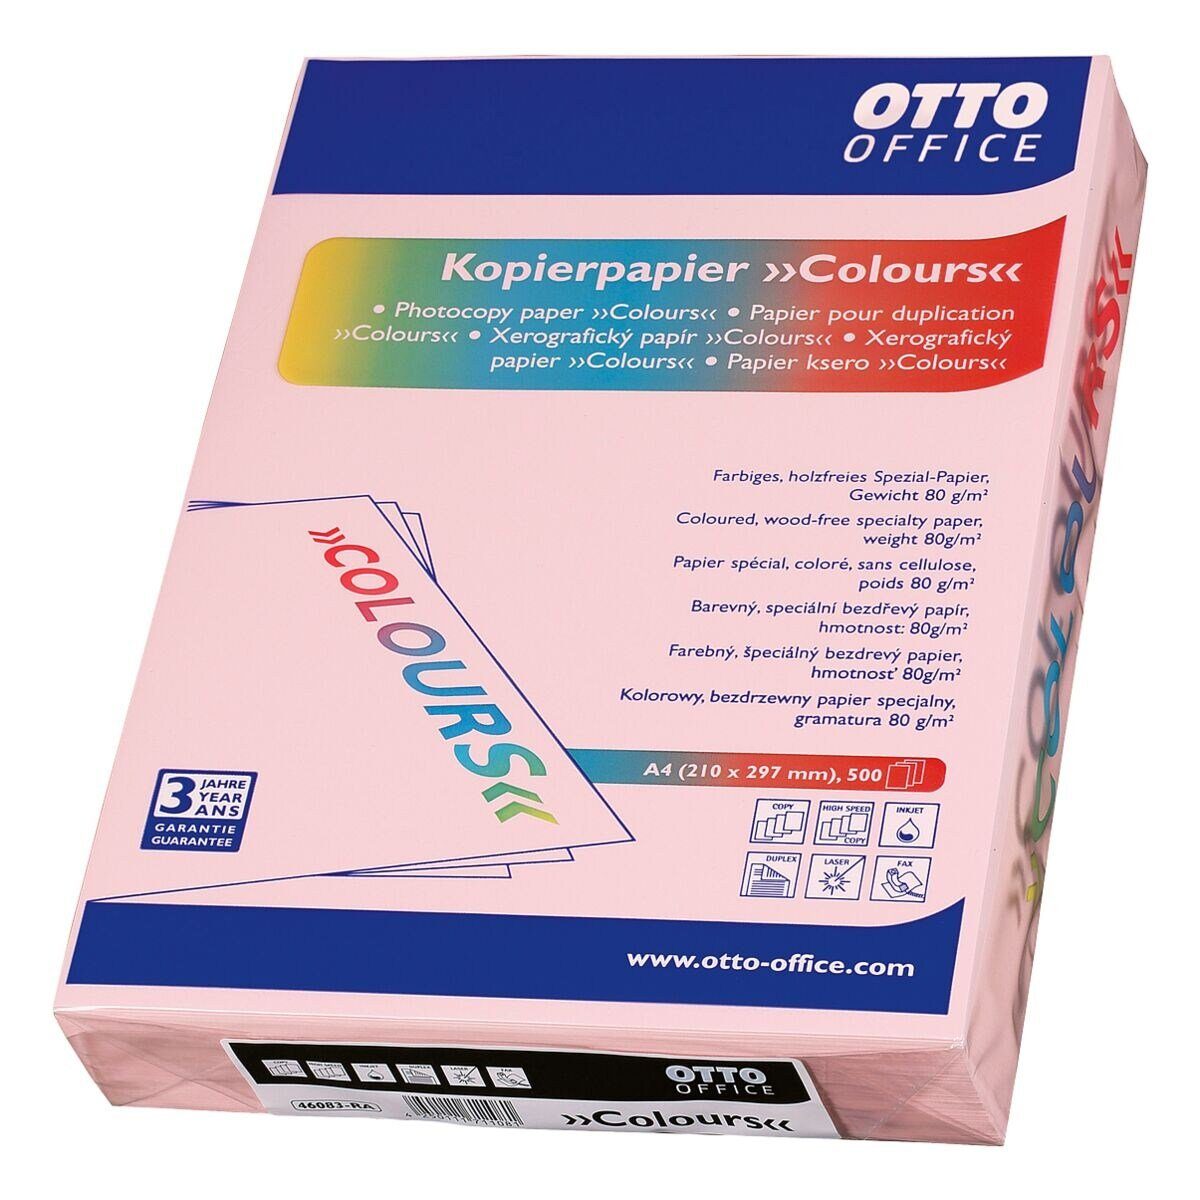 Otto Office Druckerpapier COLOURS, Pastellfarben, Format DIN A4, 80 g/m², 500 Blatt